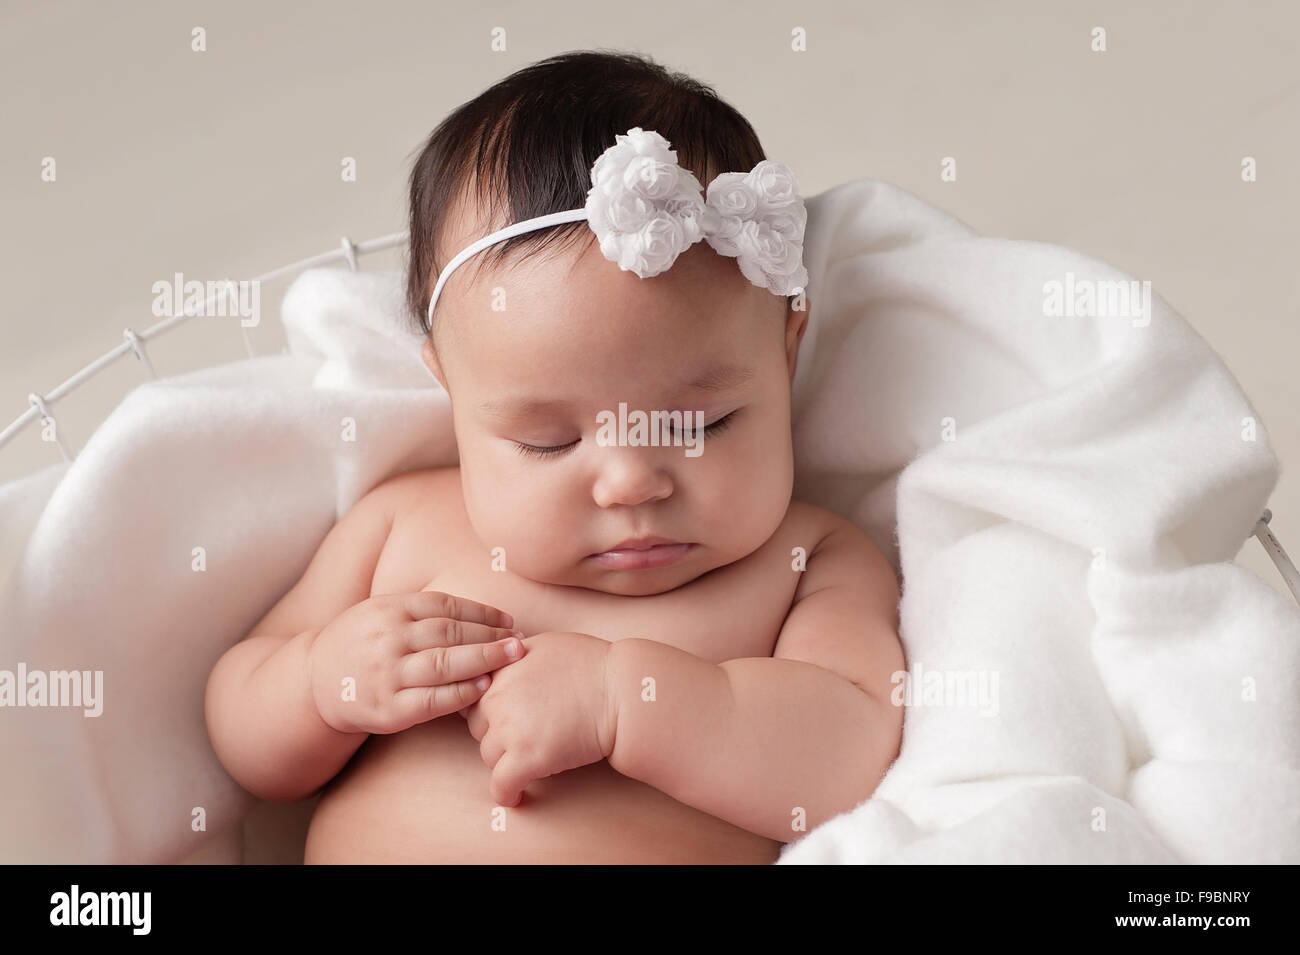 Vier Monate altes Baby Mädchen tragen eine weiße, Bogen Stirnband. Sie schläft auf weißem Stoff in einen Drahtkorb gesetzt. Gedreht in Stockfoto